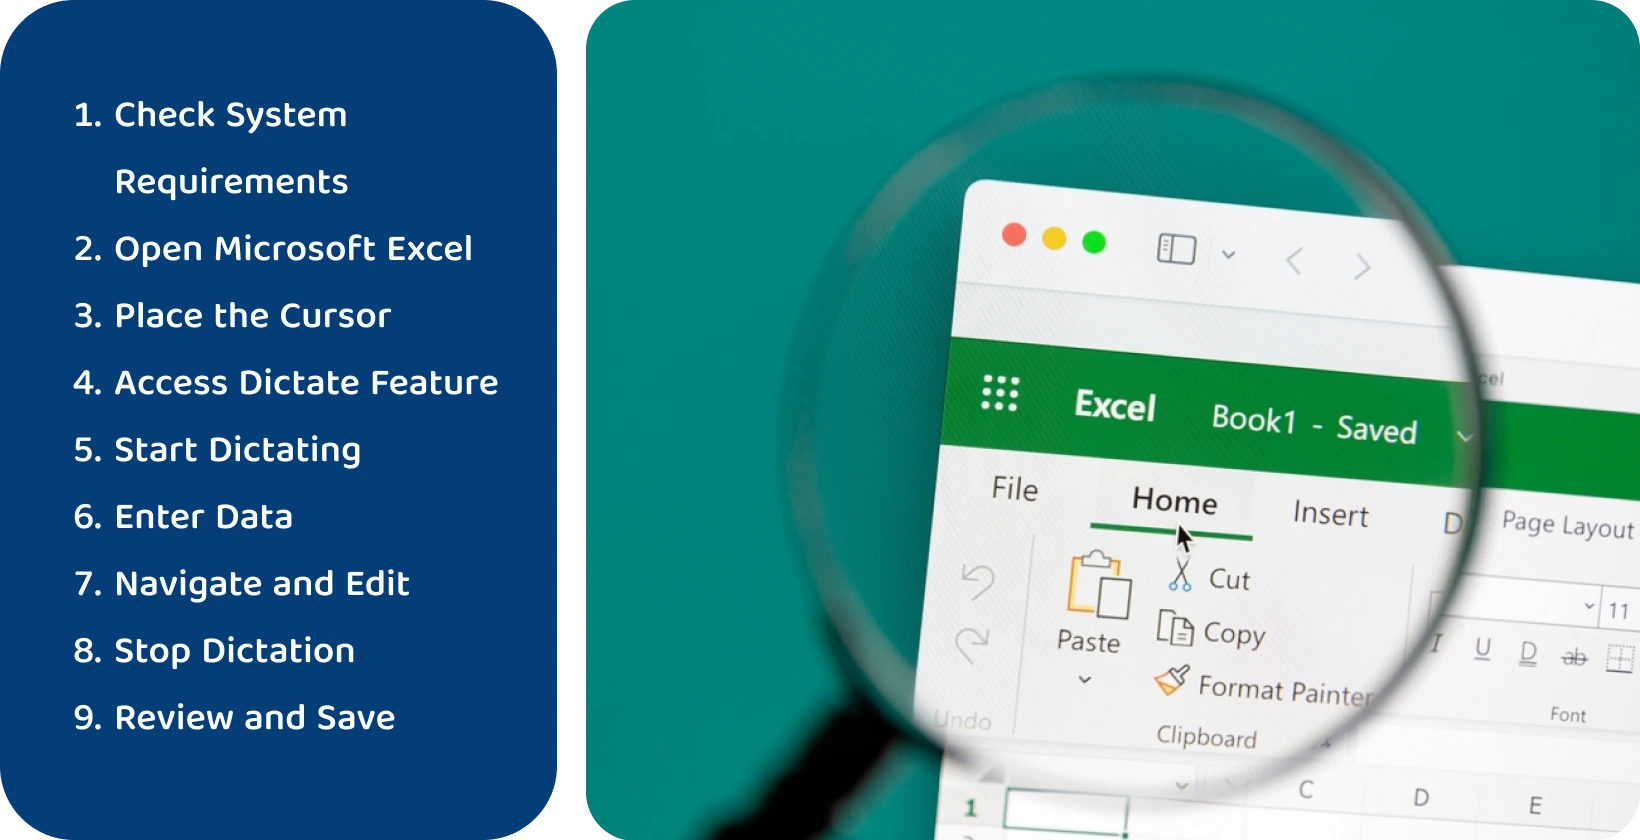 Χρησιμοποιήστε τη λειτουργία υπαγόρευσης στο Excel για να μεταγράψετε αποτελεσματικά την ομιλία σε κείμενο, όπως φαίνεται μέσω της μεγεθυμένης διεπαφής.